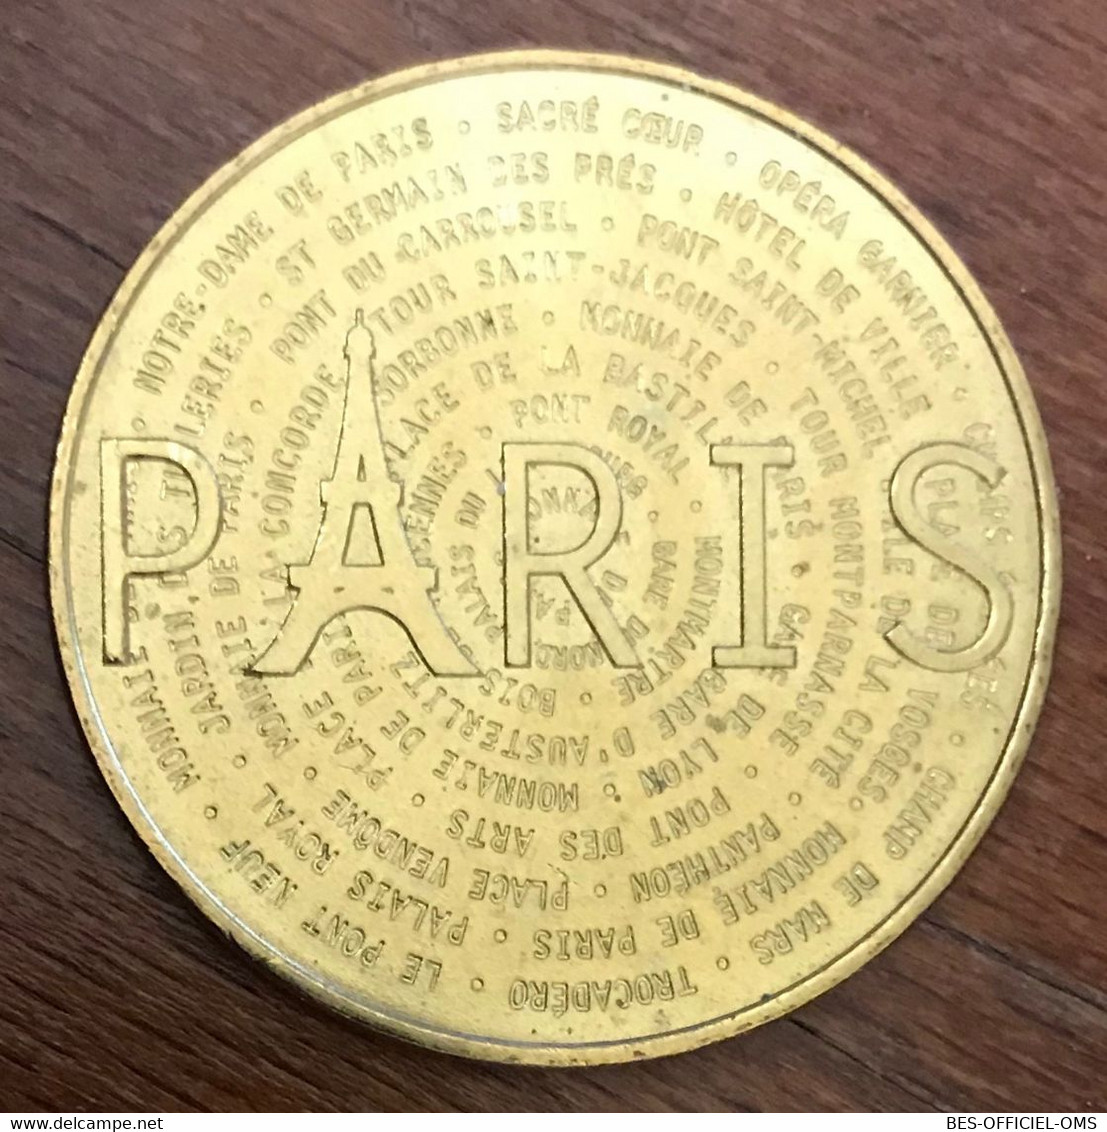 75 PARIS MONUMENTS OMS INFOPUCE MDP 2016 MÉDAILLE SOUVENIR MONNAIE DE PARIS JETON TOURISTIQUE MEDALS COINS TOKENS - 2016